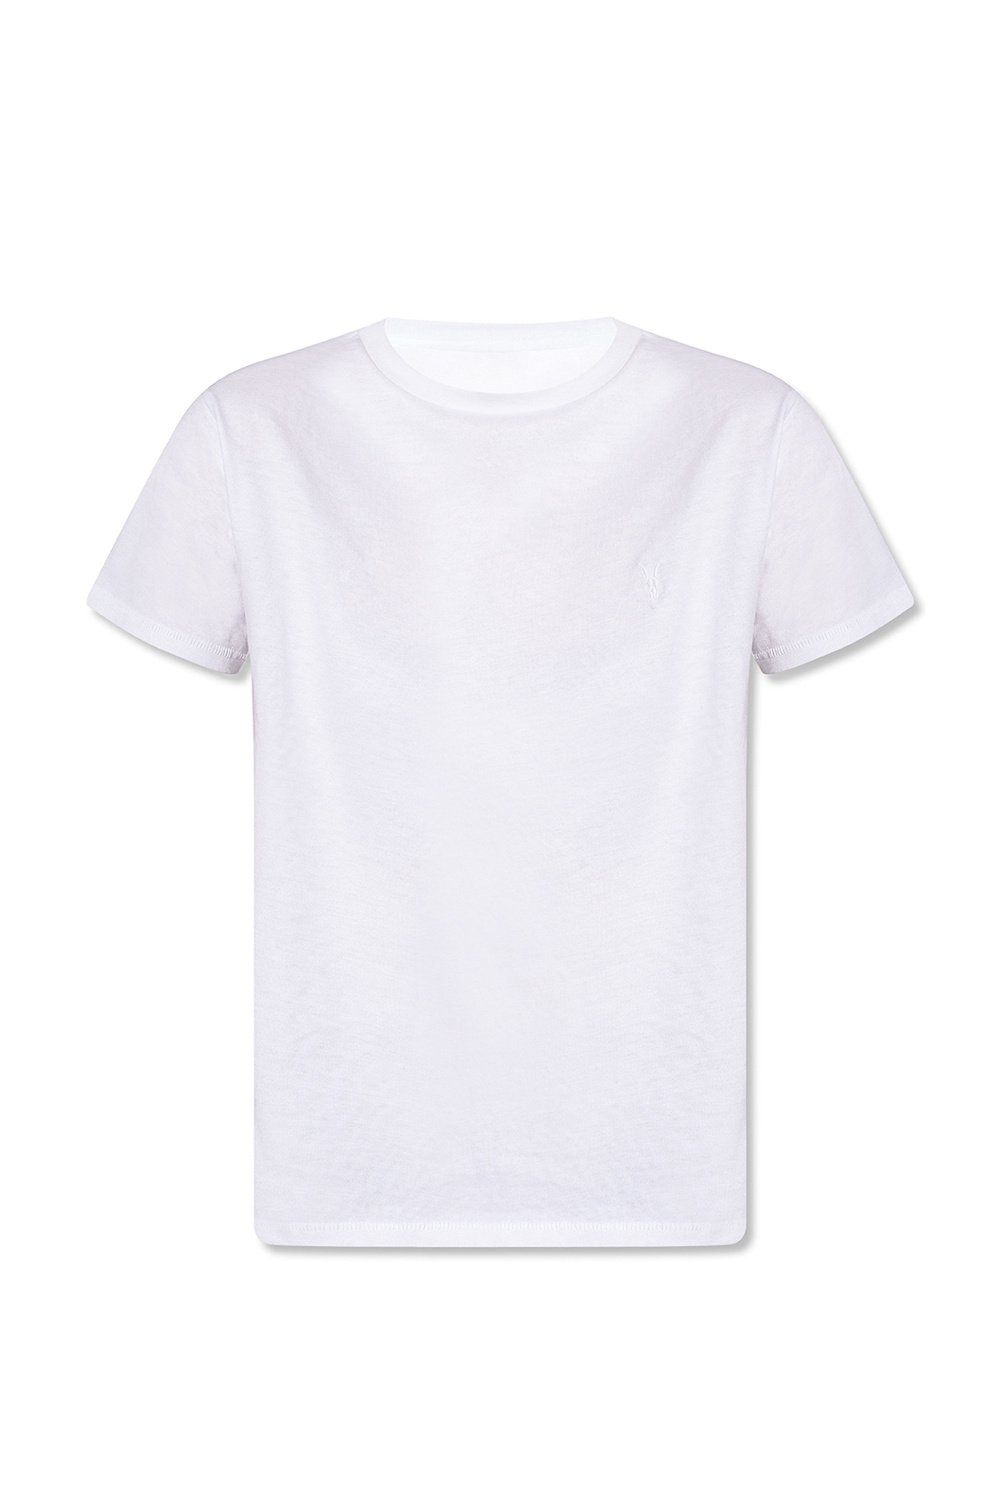 AllSaints ‘Grace’ T-shirt